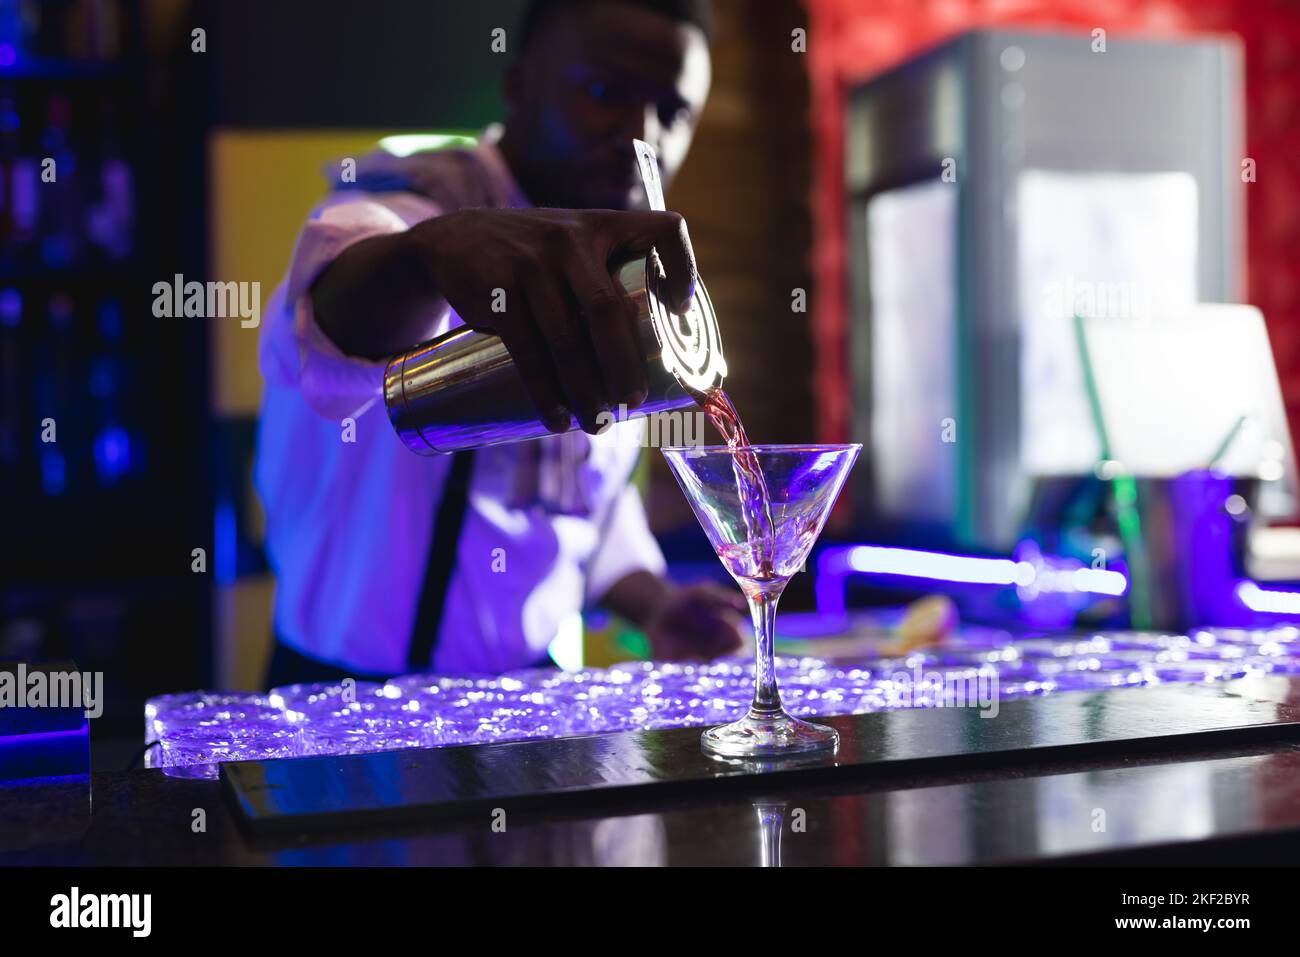 Le barman afro-américain verse un cocktail rose au bar d'une discothèque Banque D'Images